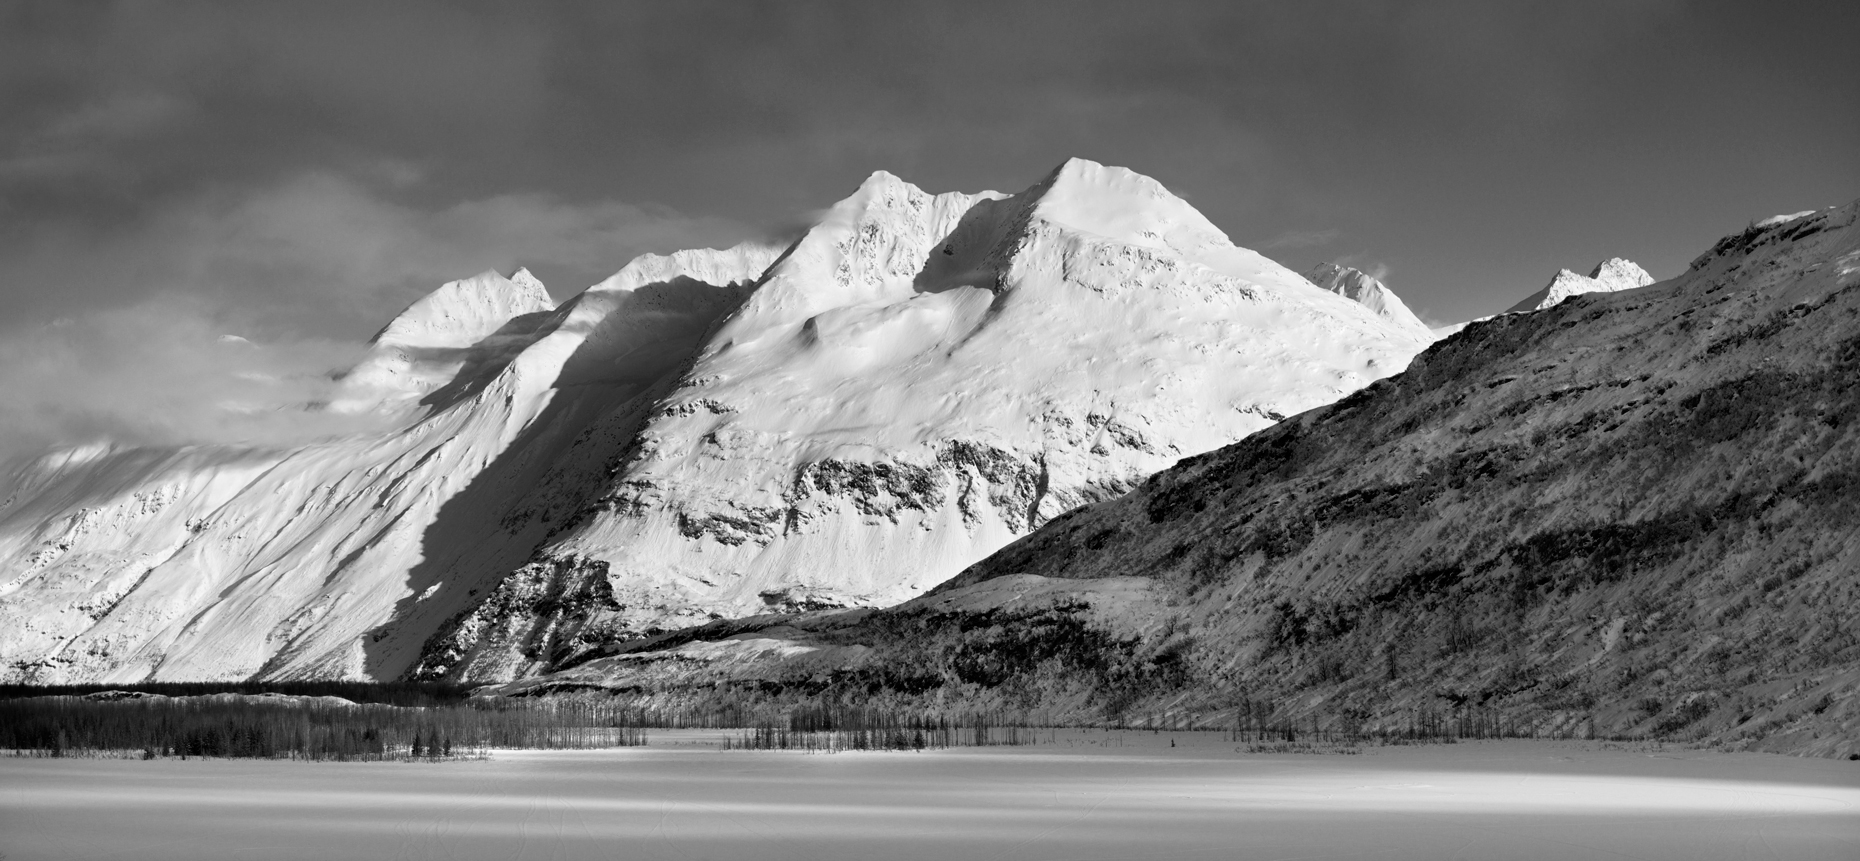 Jon Wyatt Photography - Sunlight on Chugach Mountains, Valdez, Alaska